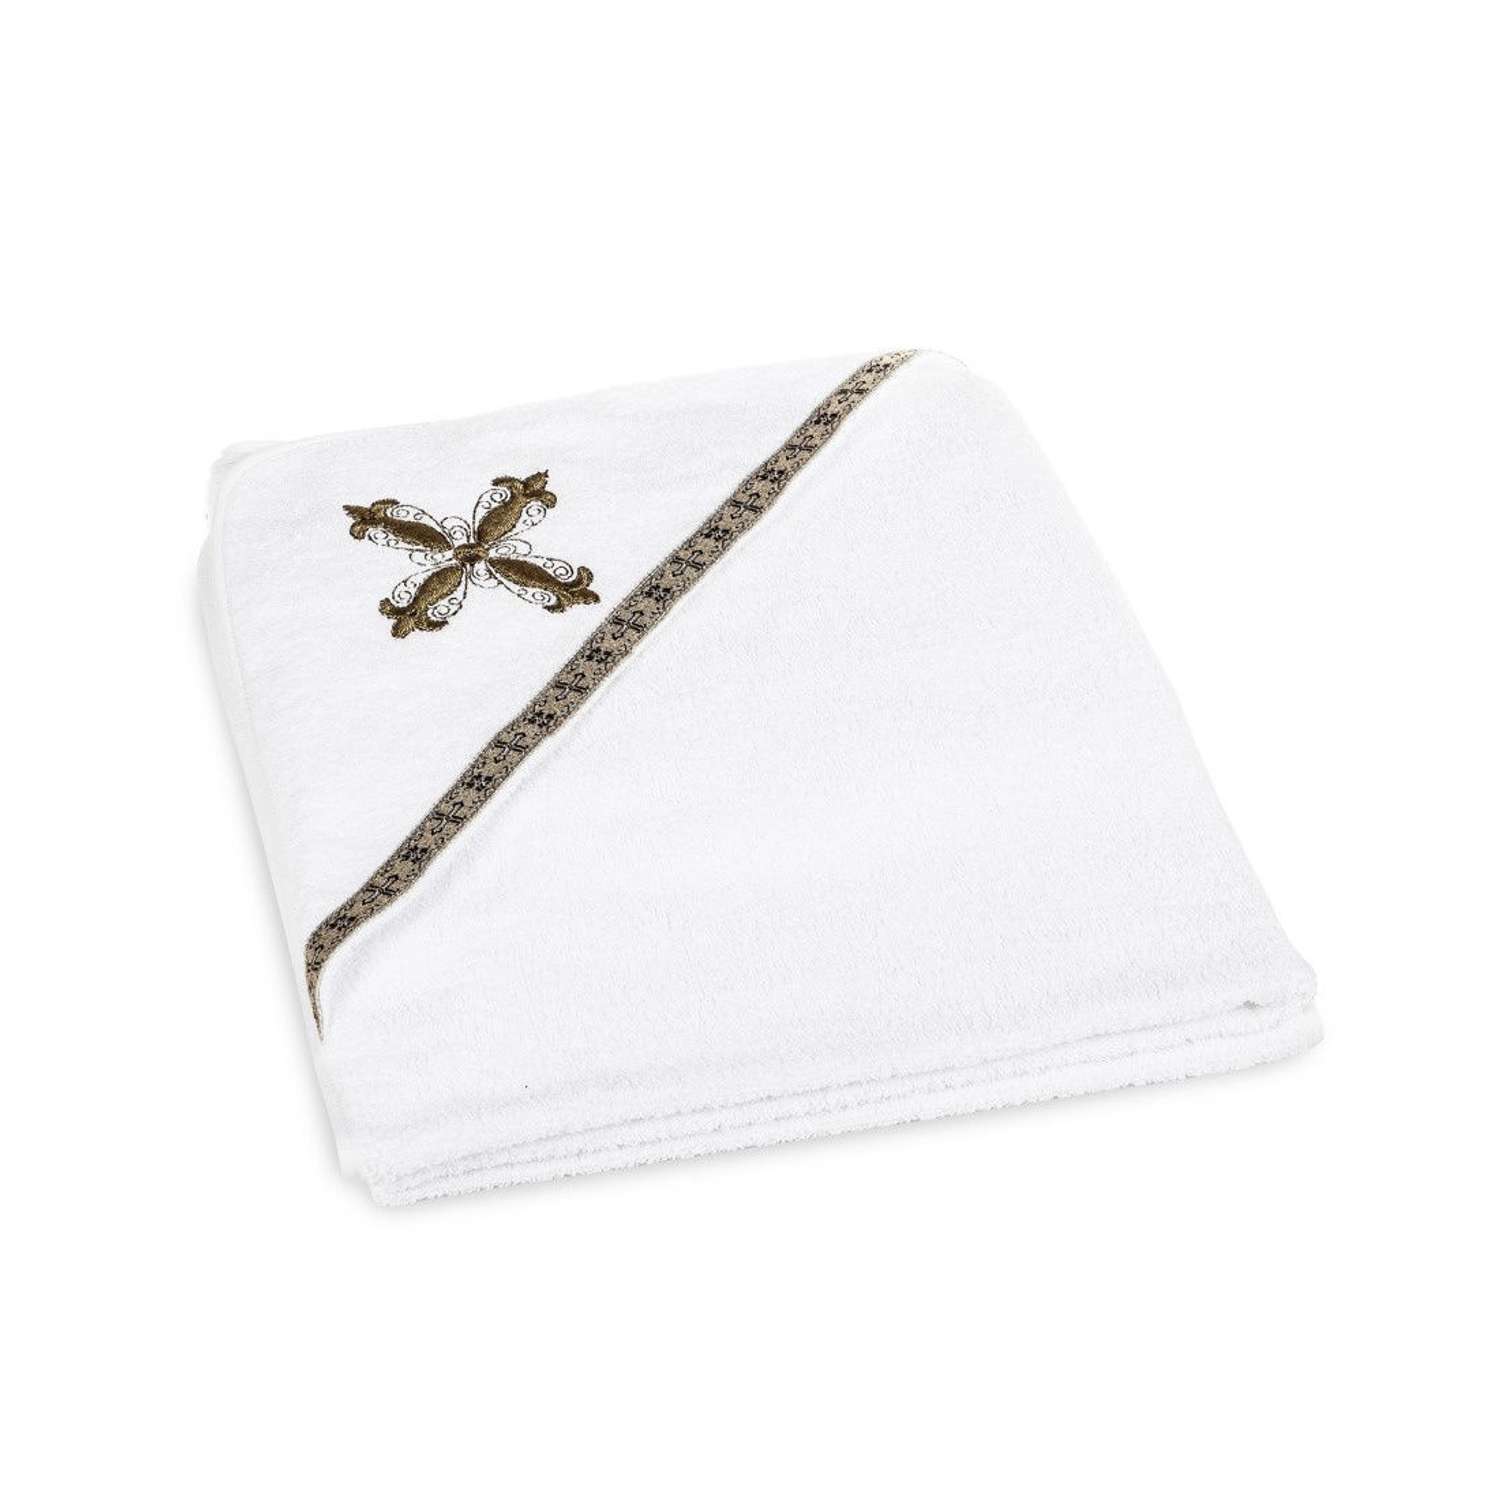 Полотенце для крещения Святополье 100х75 см с вышивкой крест Золотистый - фото 1